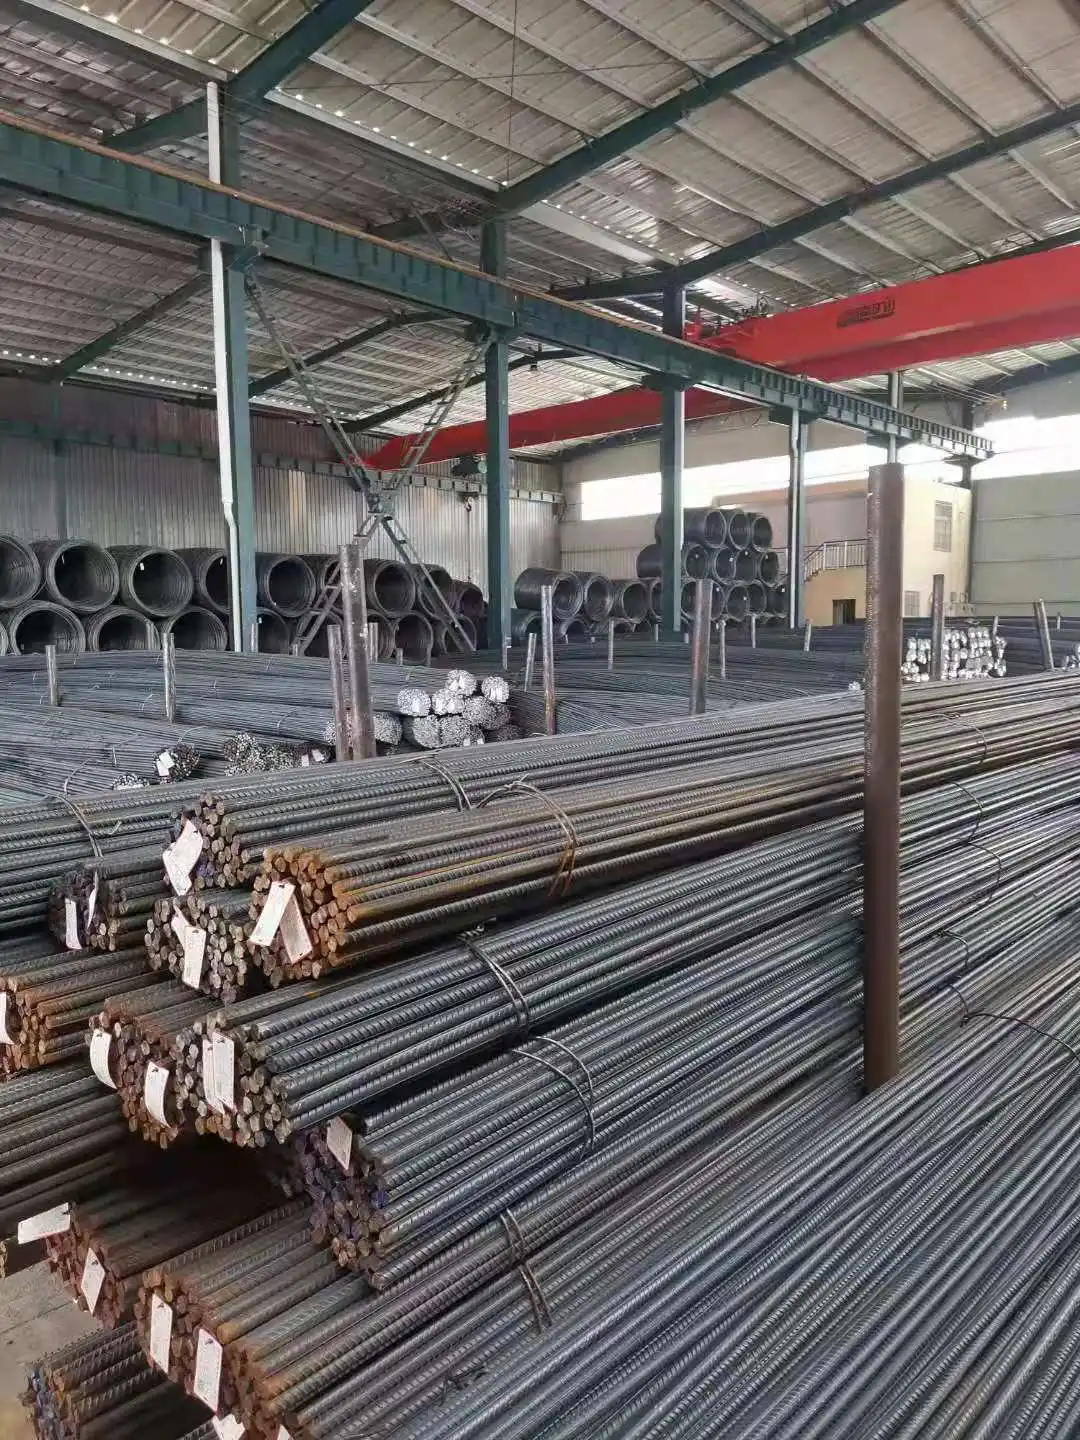 Hot sale China supplier deformed bar steel rebar price HRB400E HRB500E rebar steel steel rebar price